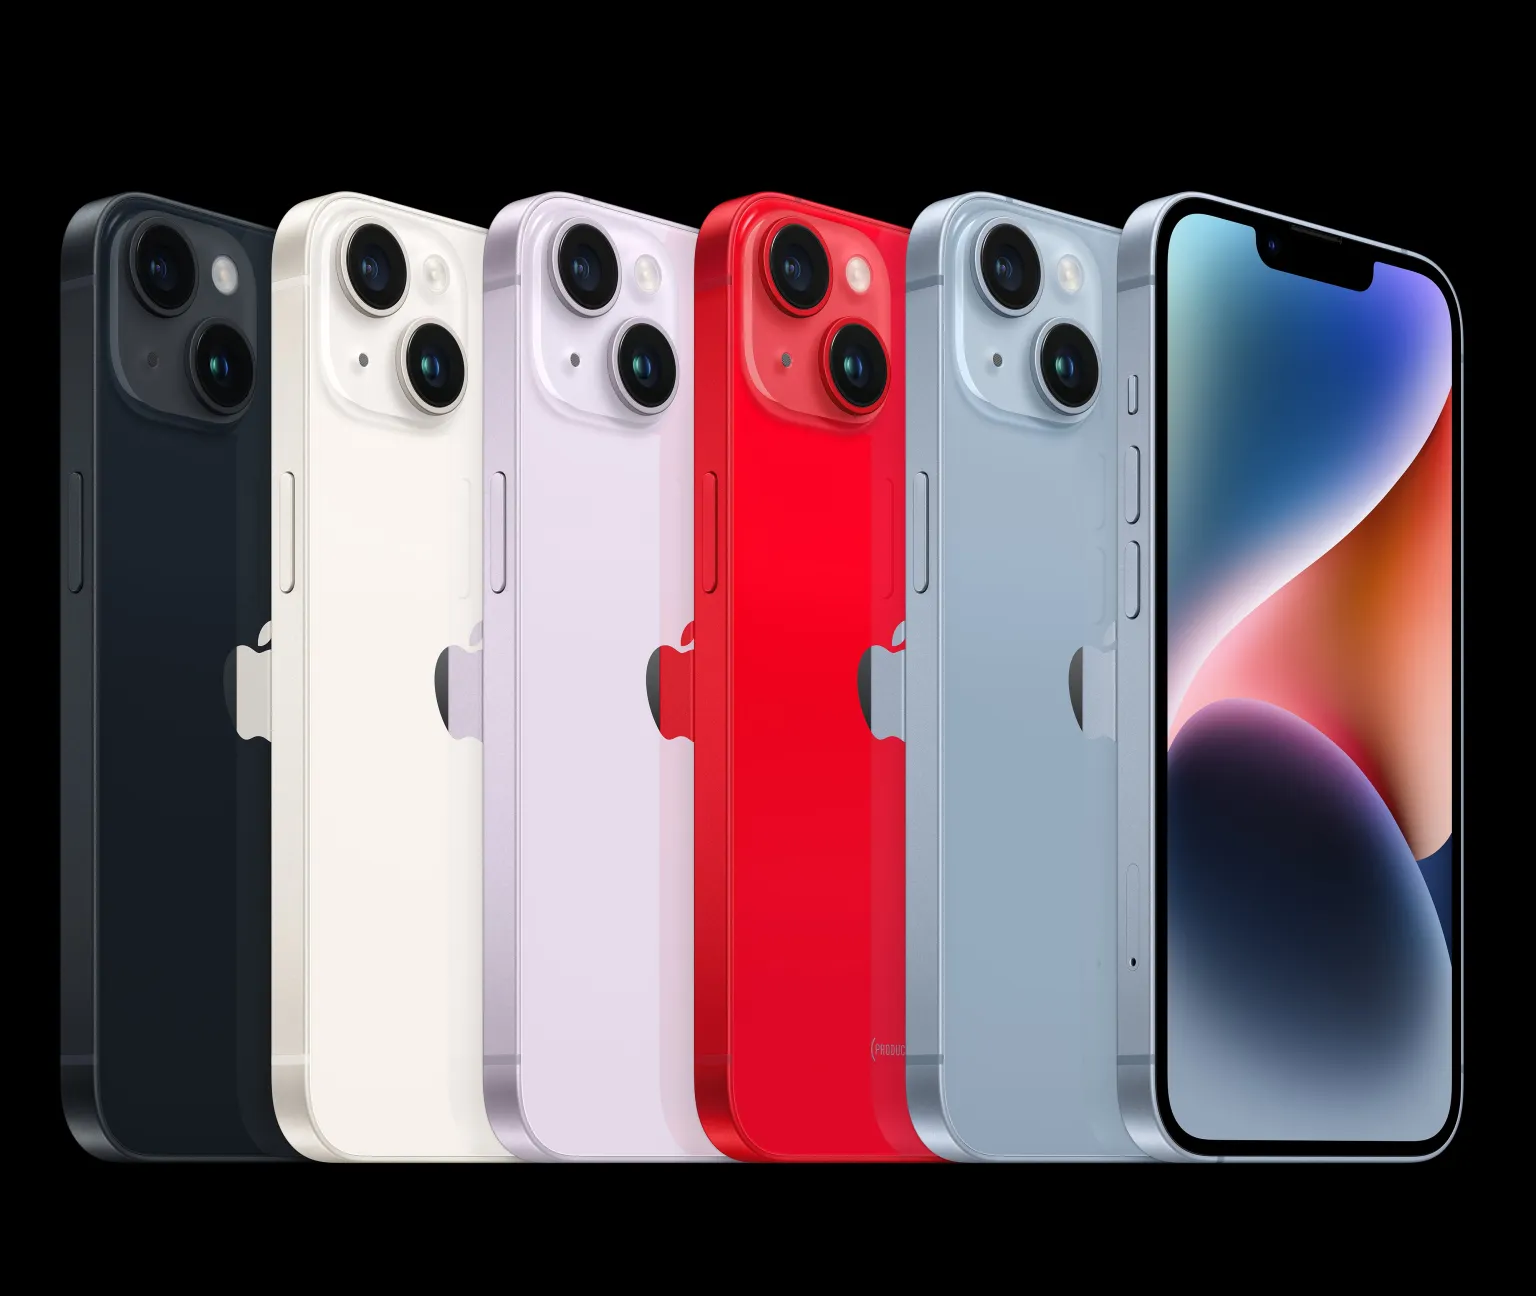 Về màu sắc, phiên bản iPhone 14 tiêu chuẩn chiếm ưu thế hơn so với iPhone 14 Pro